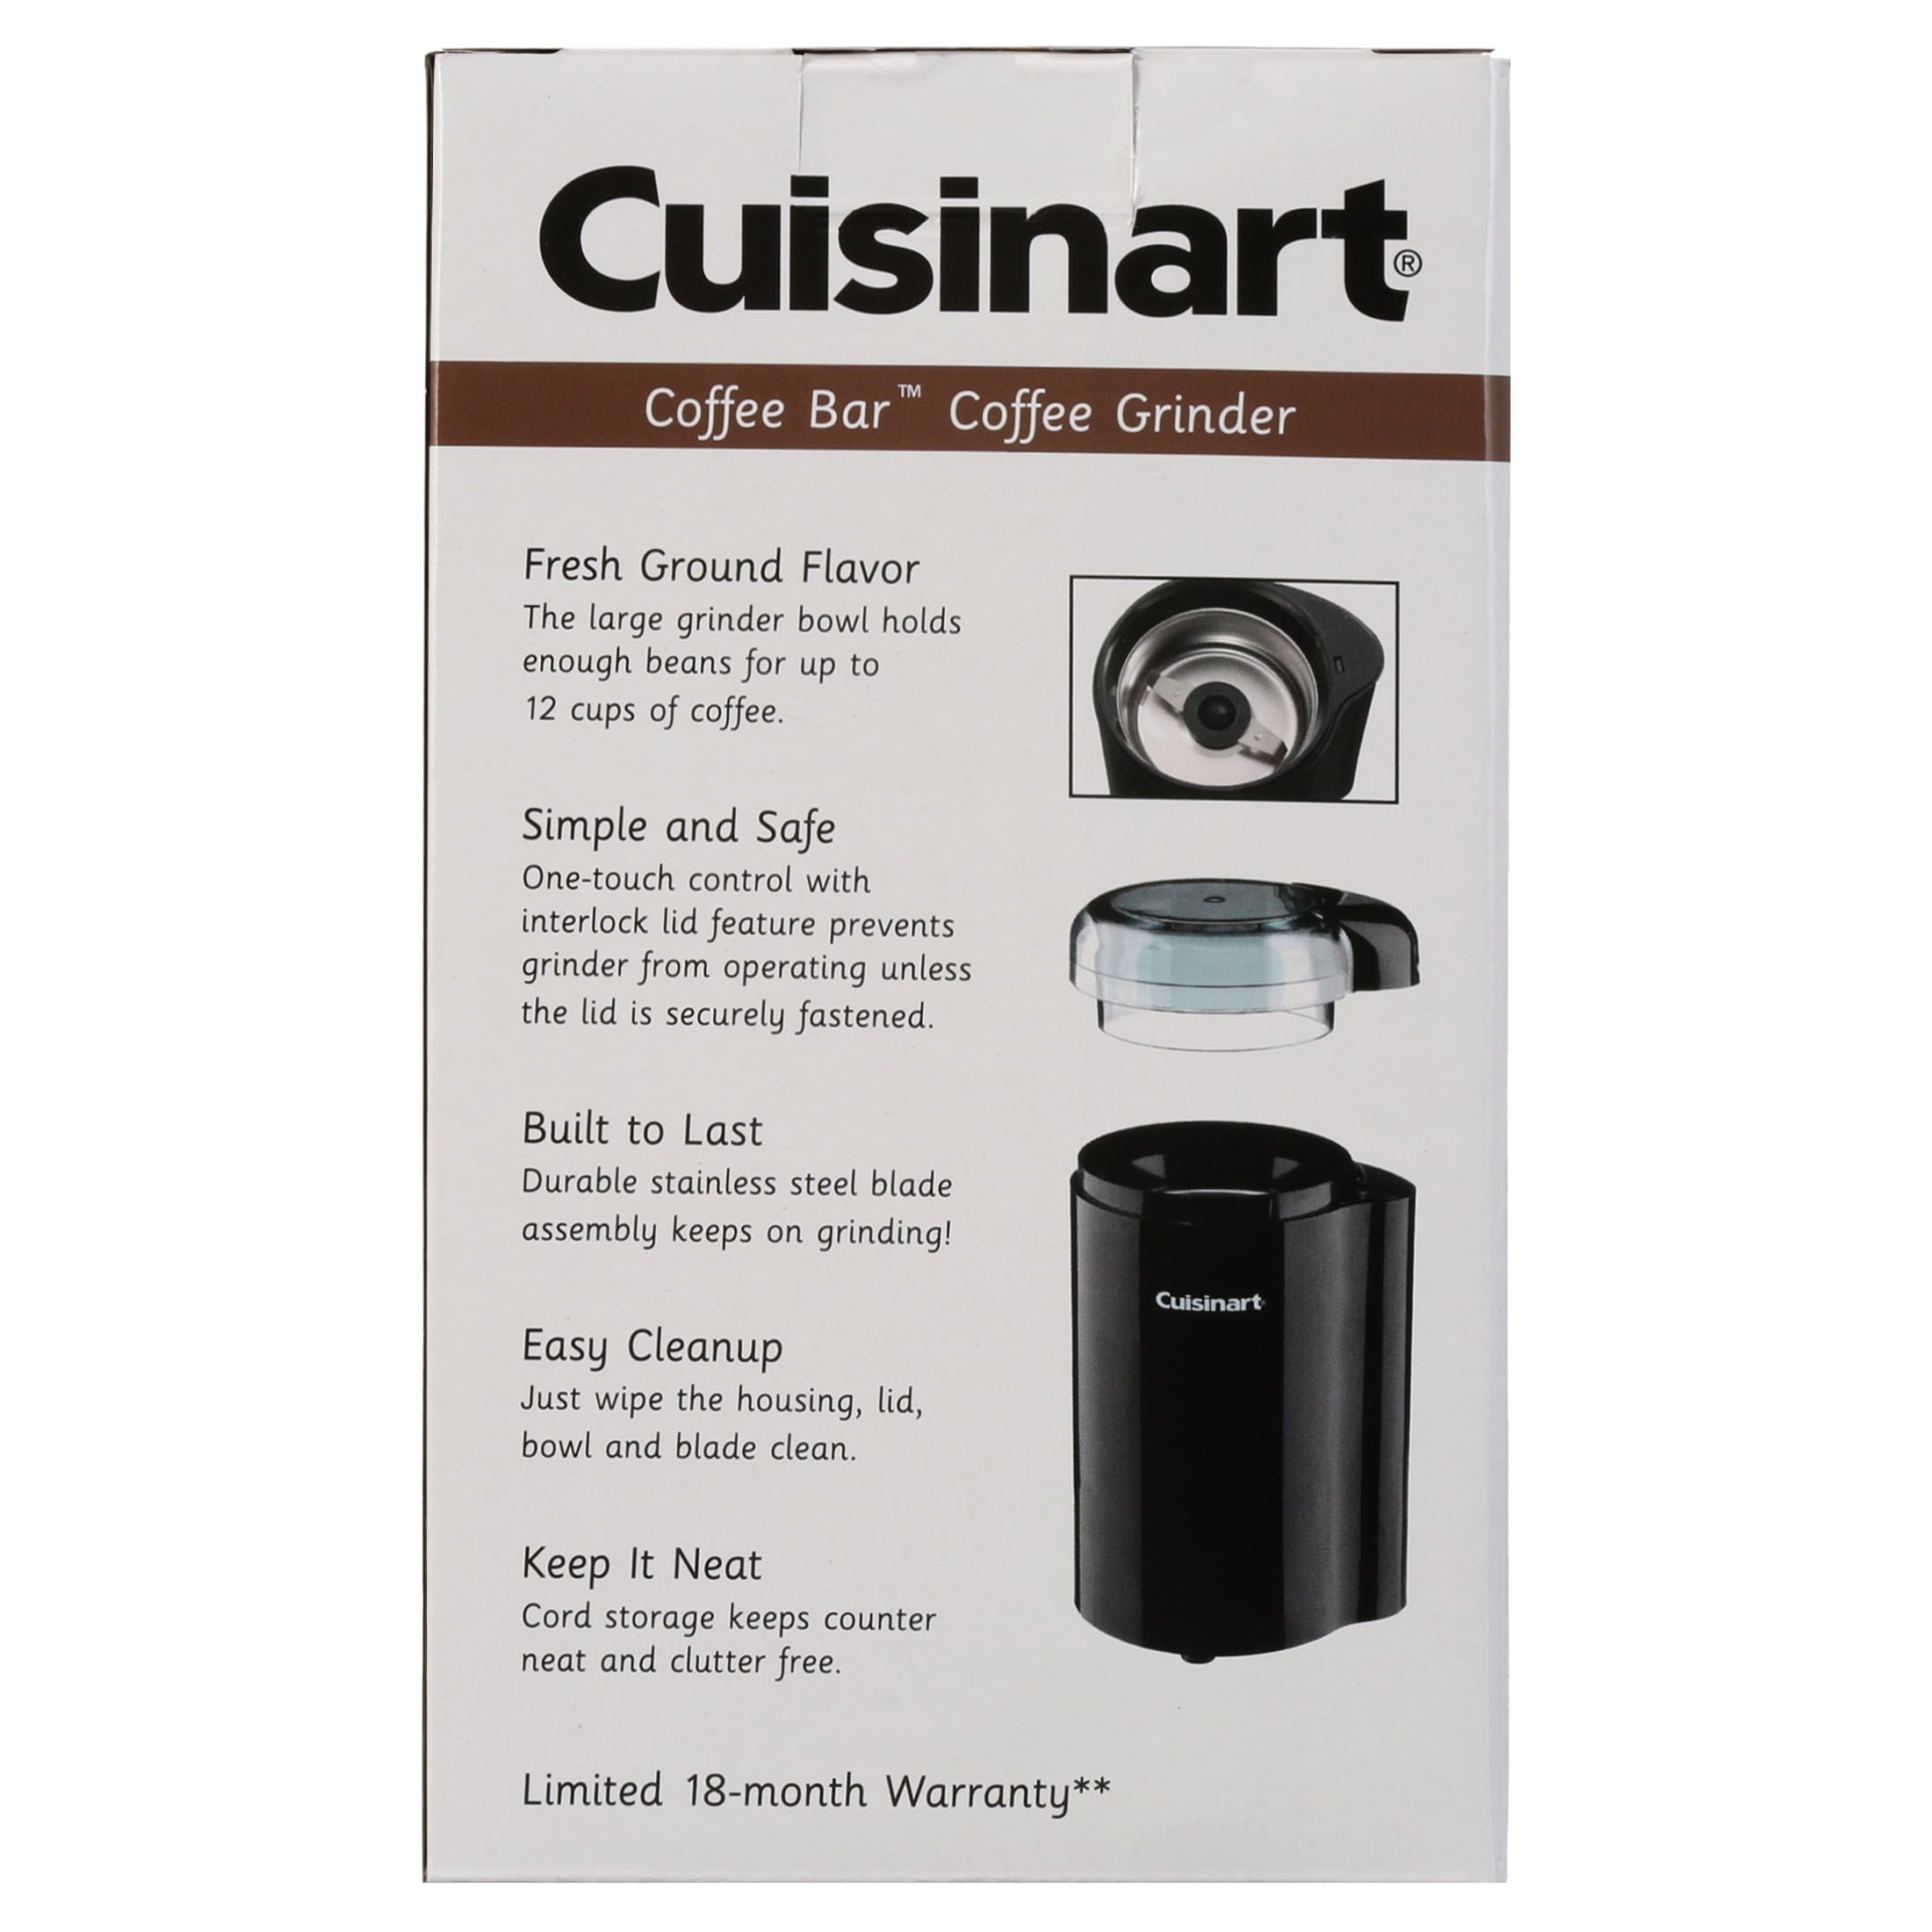 Cuisinart DCG-20N - Coffee grinder - white